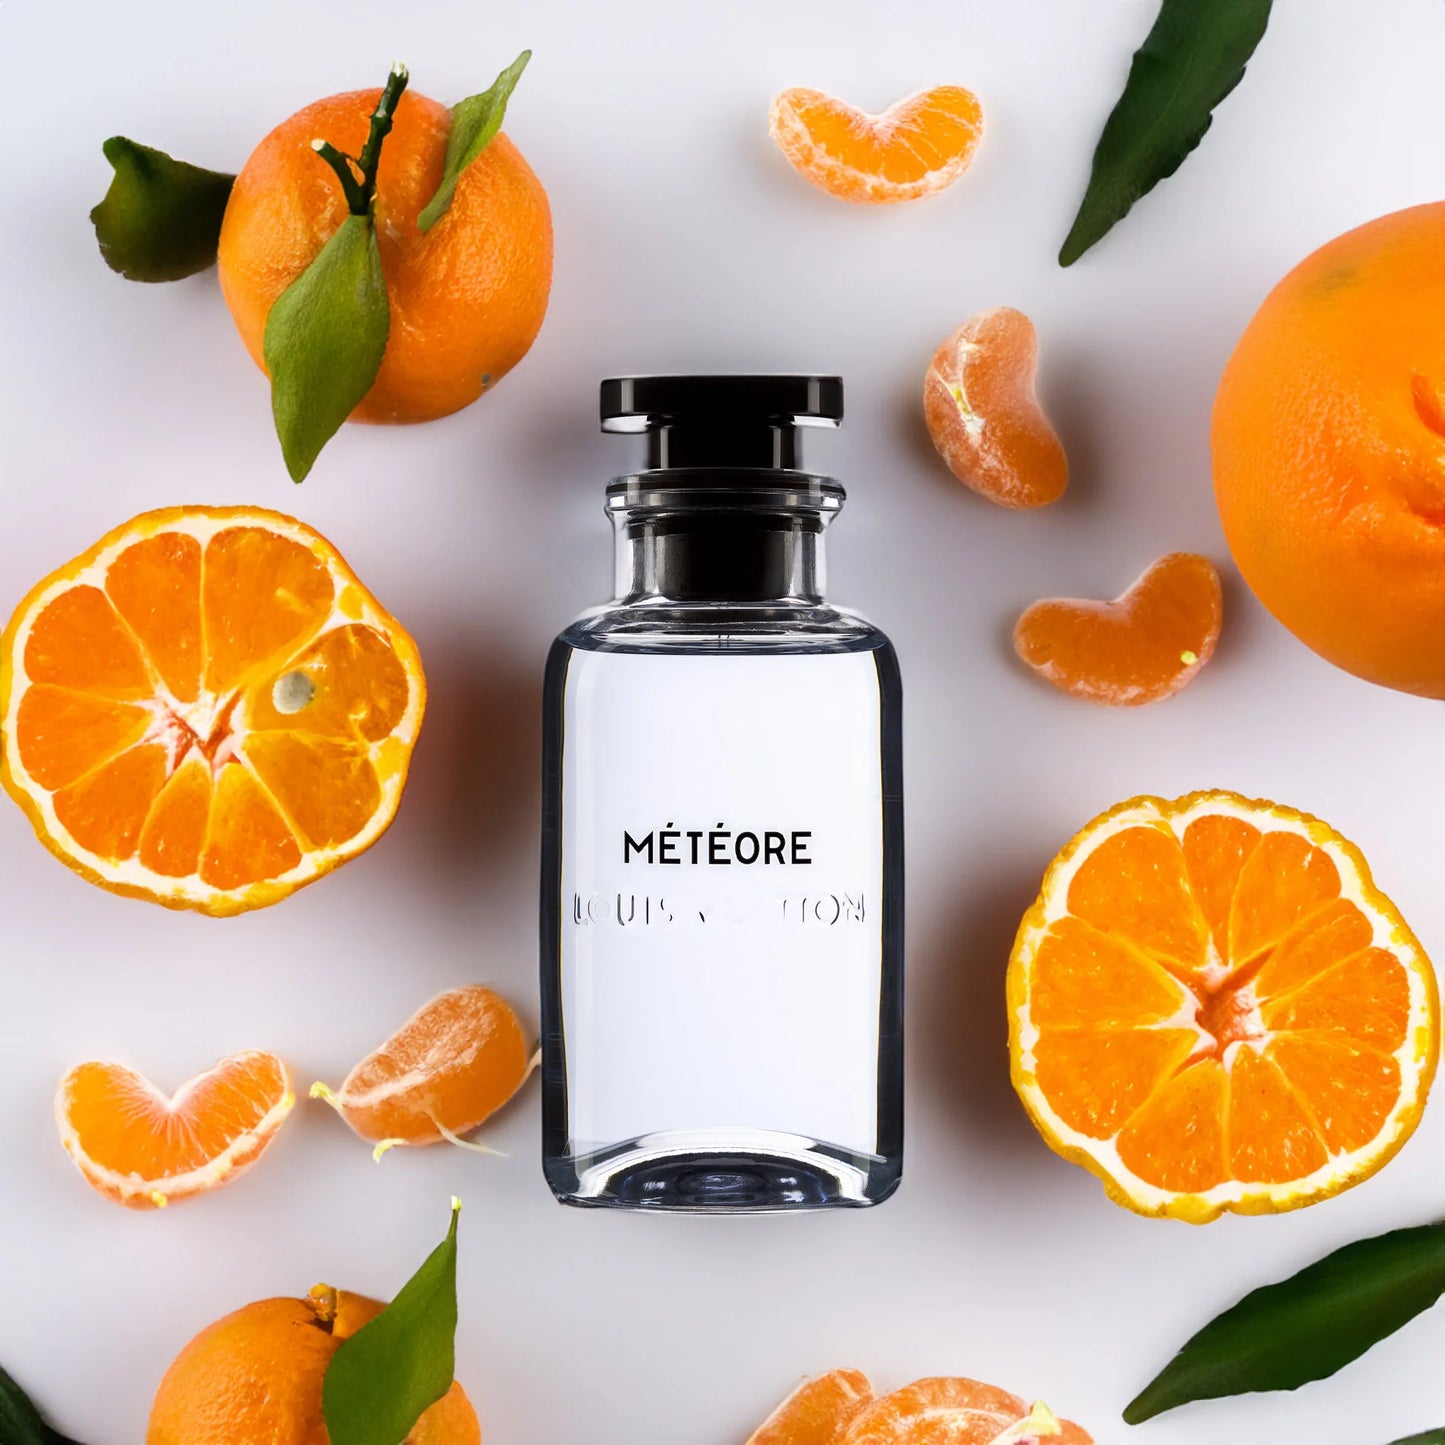 Parfüm Flakon von Louis Vuitton Meteore mit Orangen und Mandarinen